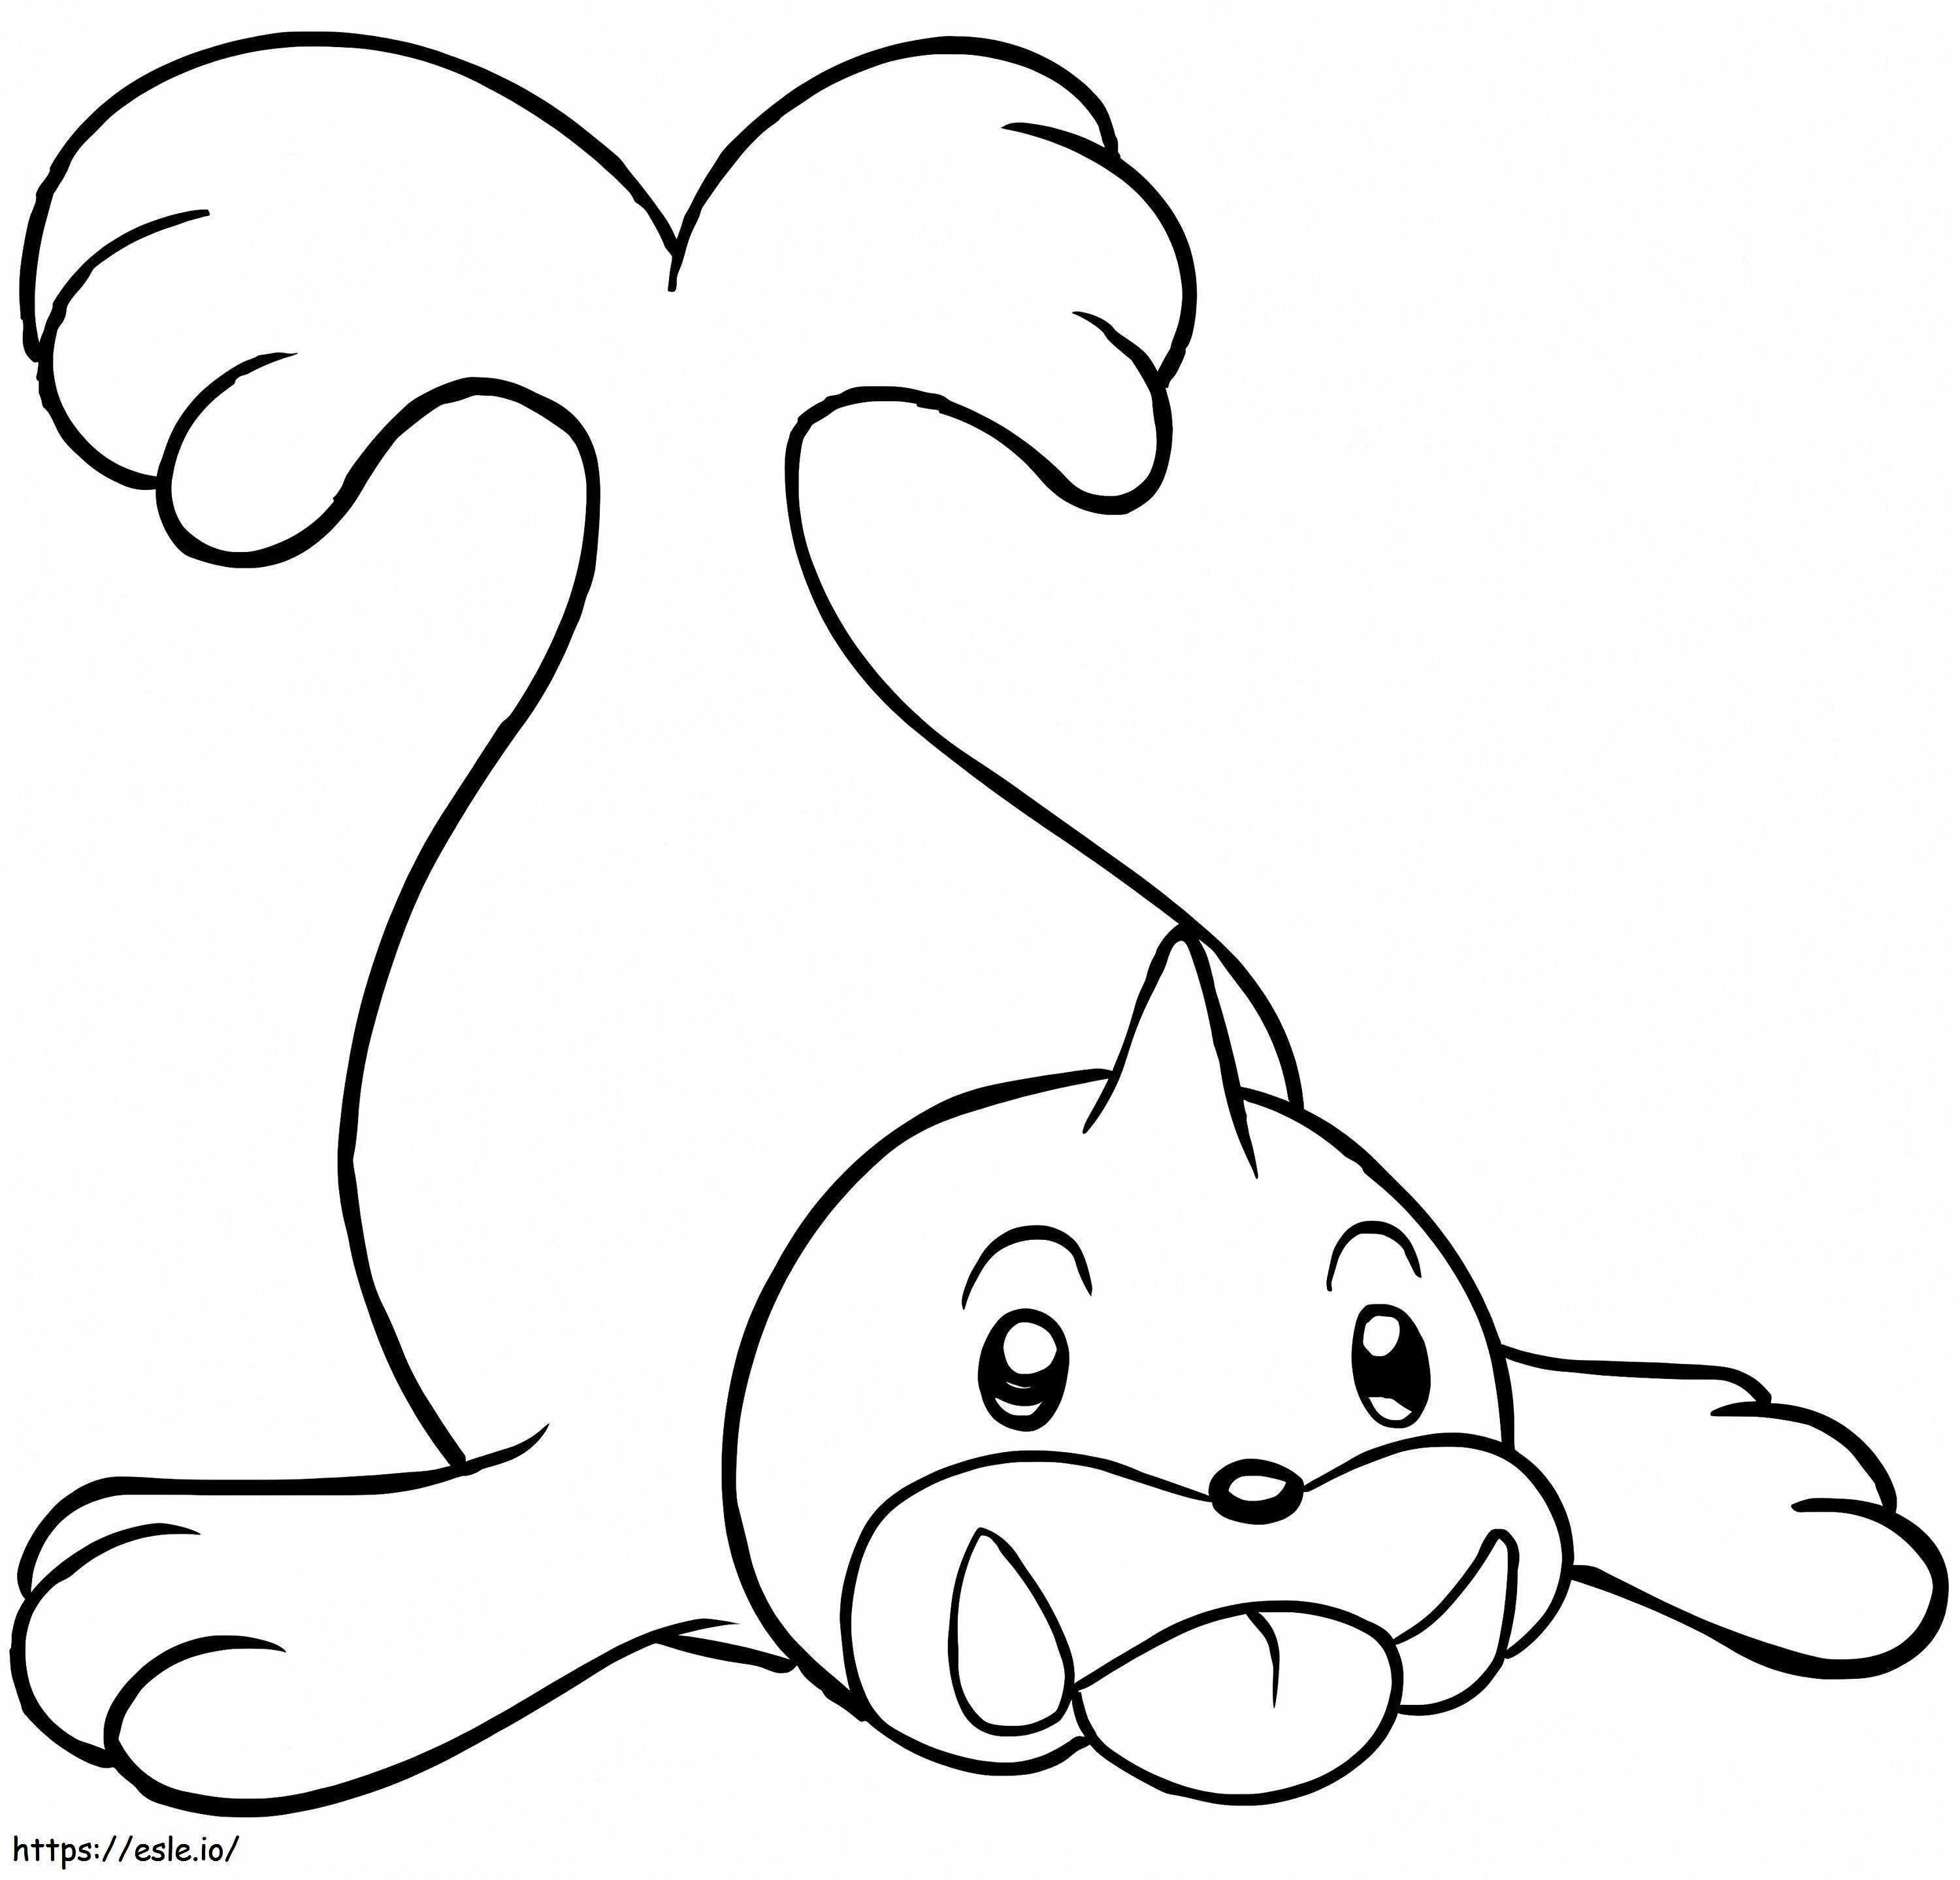 Coloriage Corde Pokémon Gen 1 à imprimer dessin